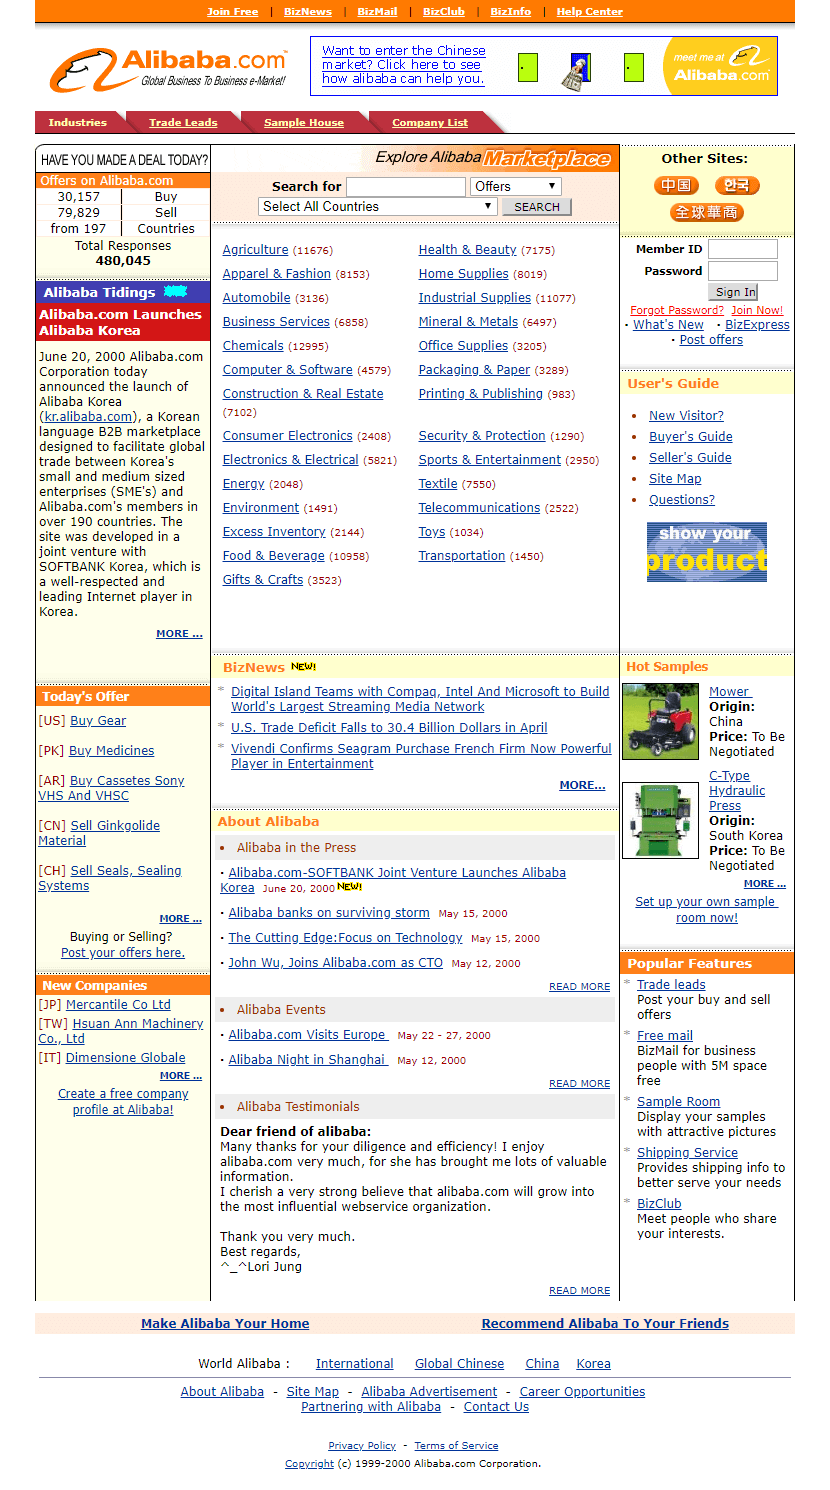 Alibaba in 2000